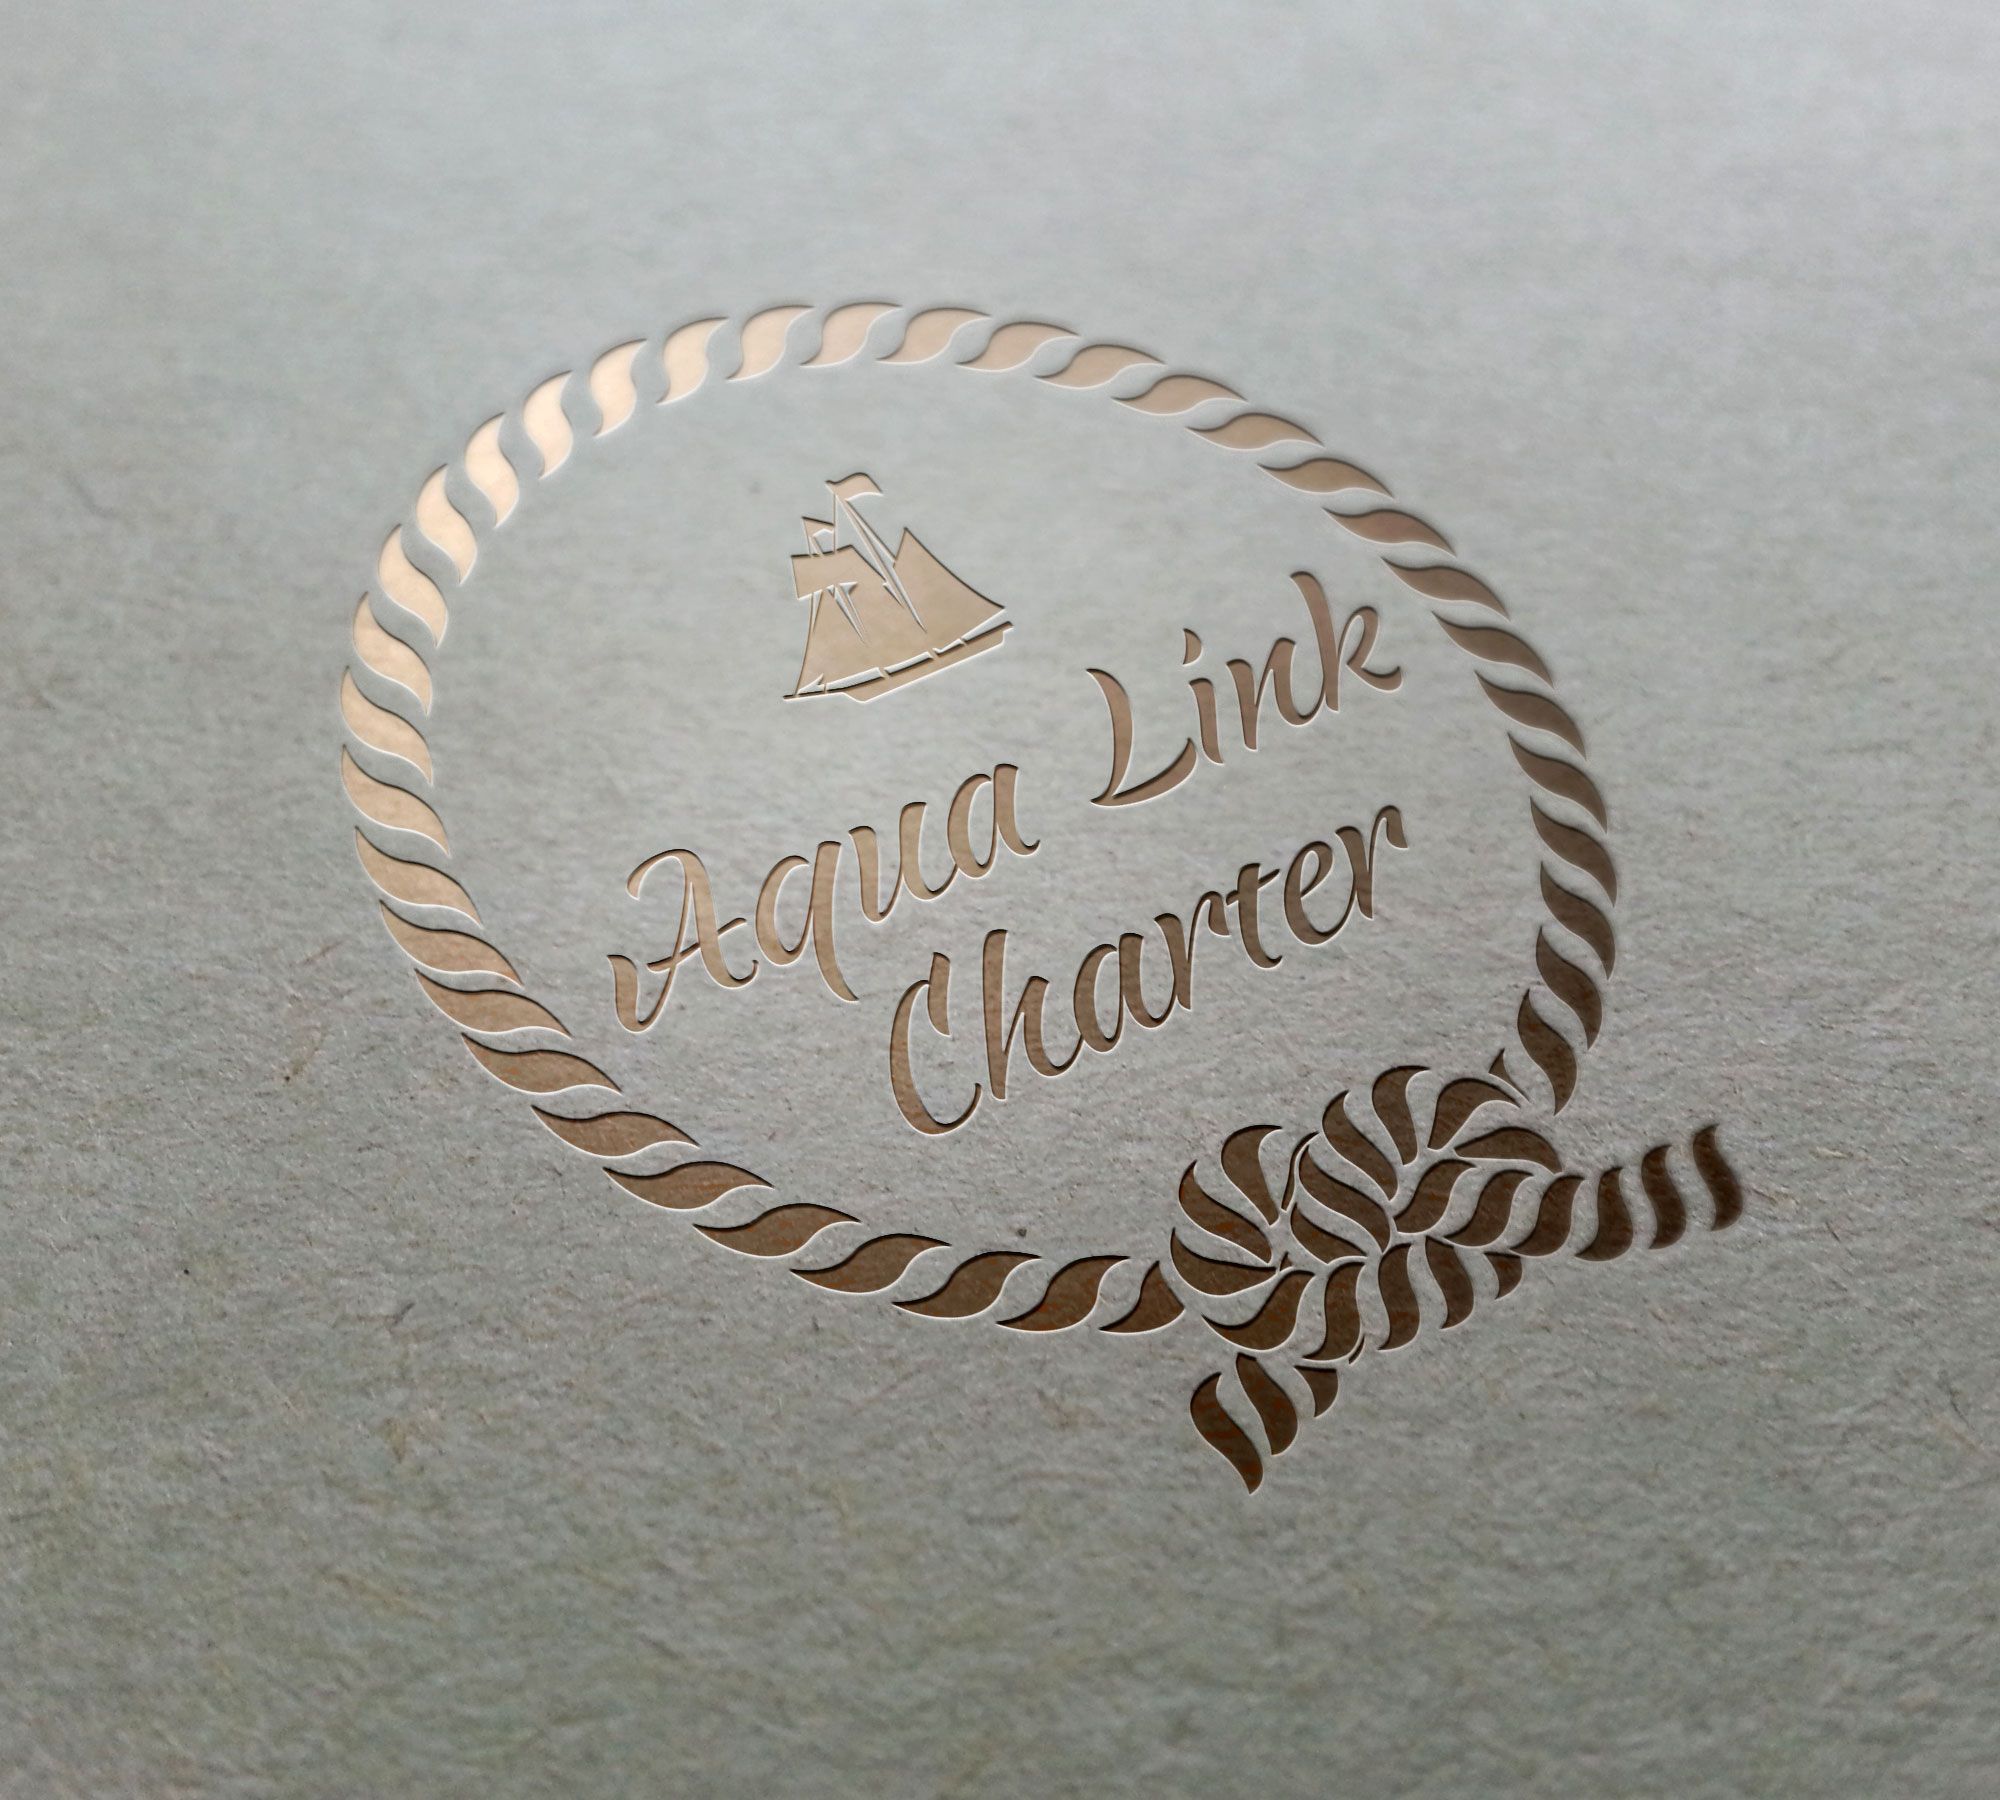 Аренда (чартер) парусных яхт - Aqua Link Charter - дизайнер TanOK1